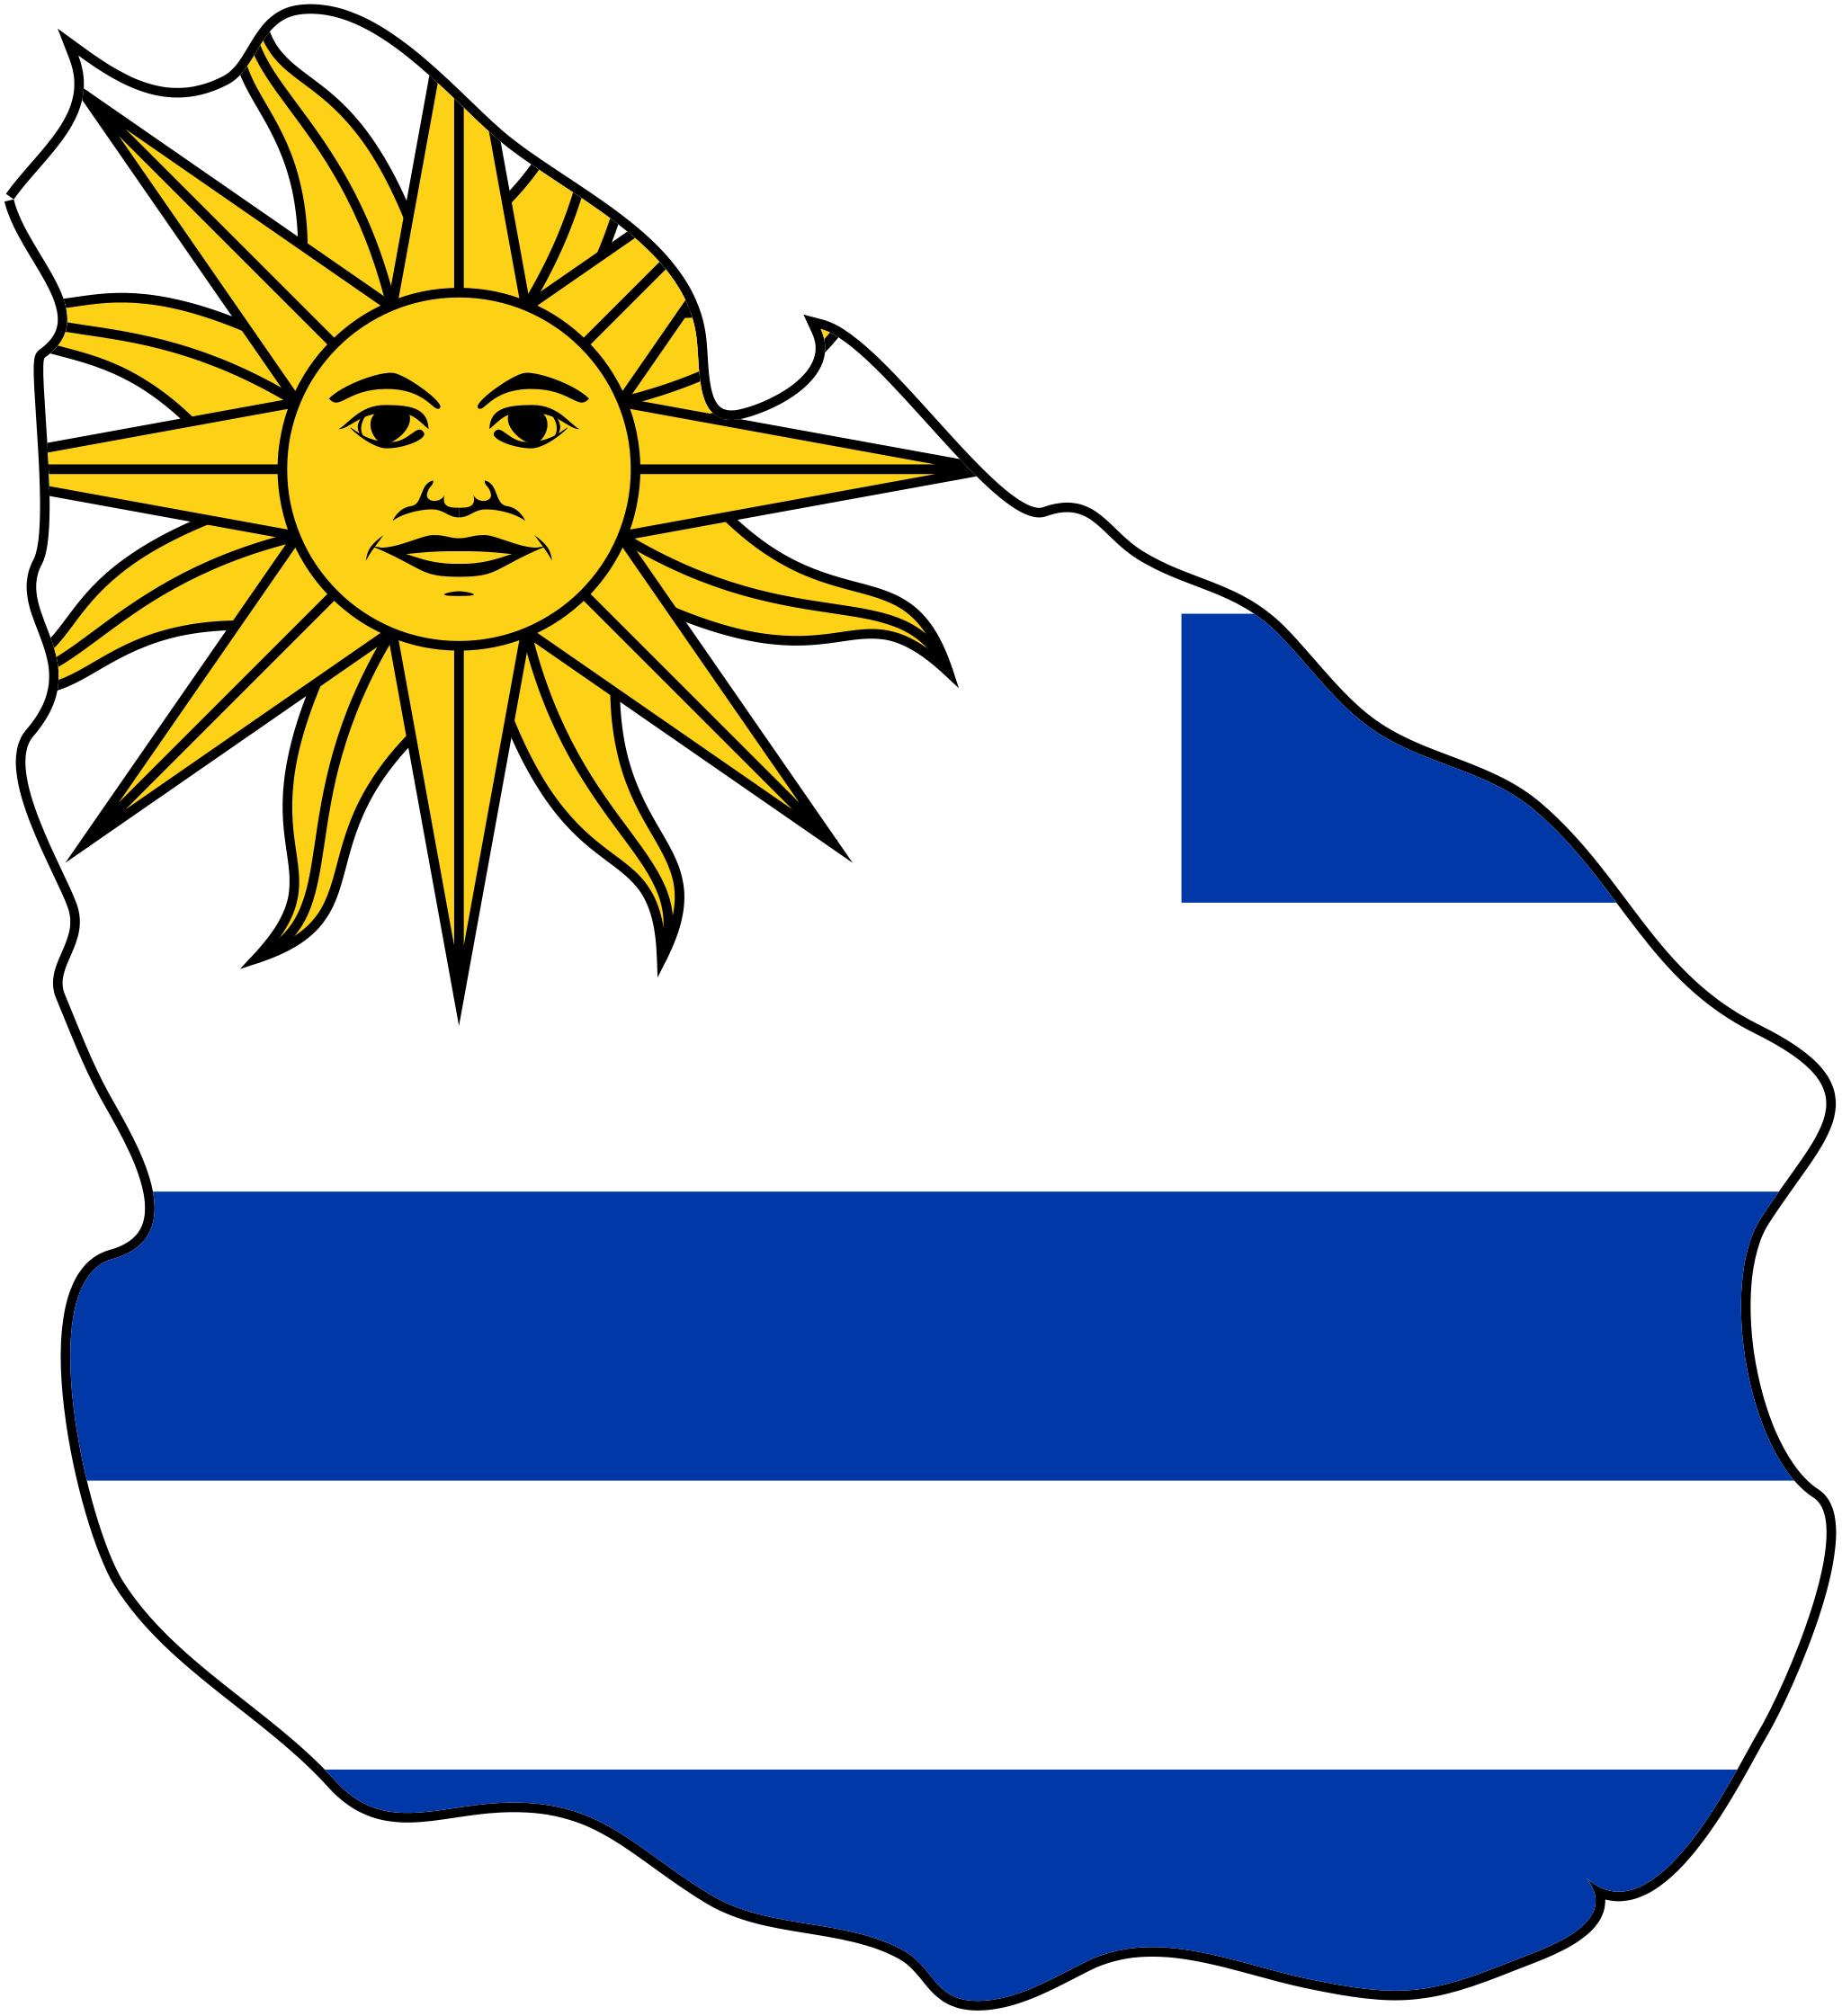 Uruguay cờ bản đồ là hình ảnh biểu tượng của đất nước này. Cờ bản đồ Uruguay phản ánh những giá trị quan trọng và vị trí địa lý của đất nước này trong khu vực. Với hình ảnh này, Uruguay sẽ truyền đạt với khách du lịch những thông tin quan trọng nhất về quốc gia và văn hóa này.